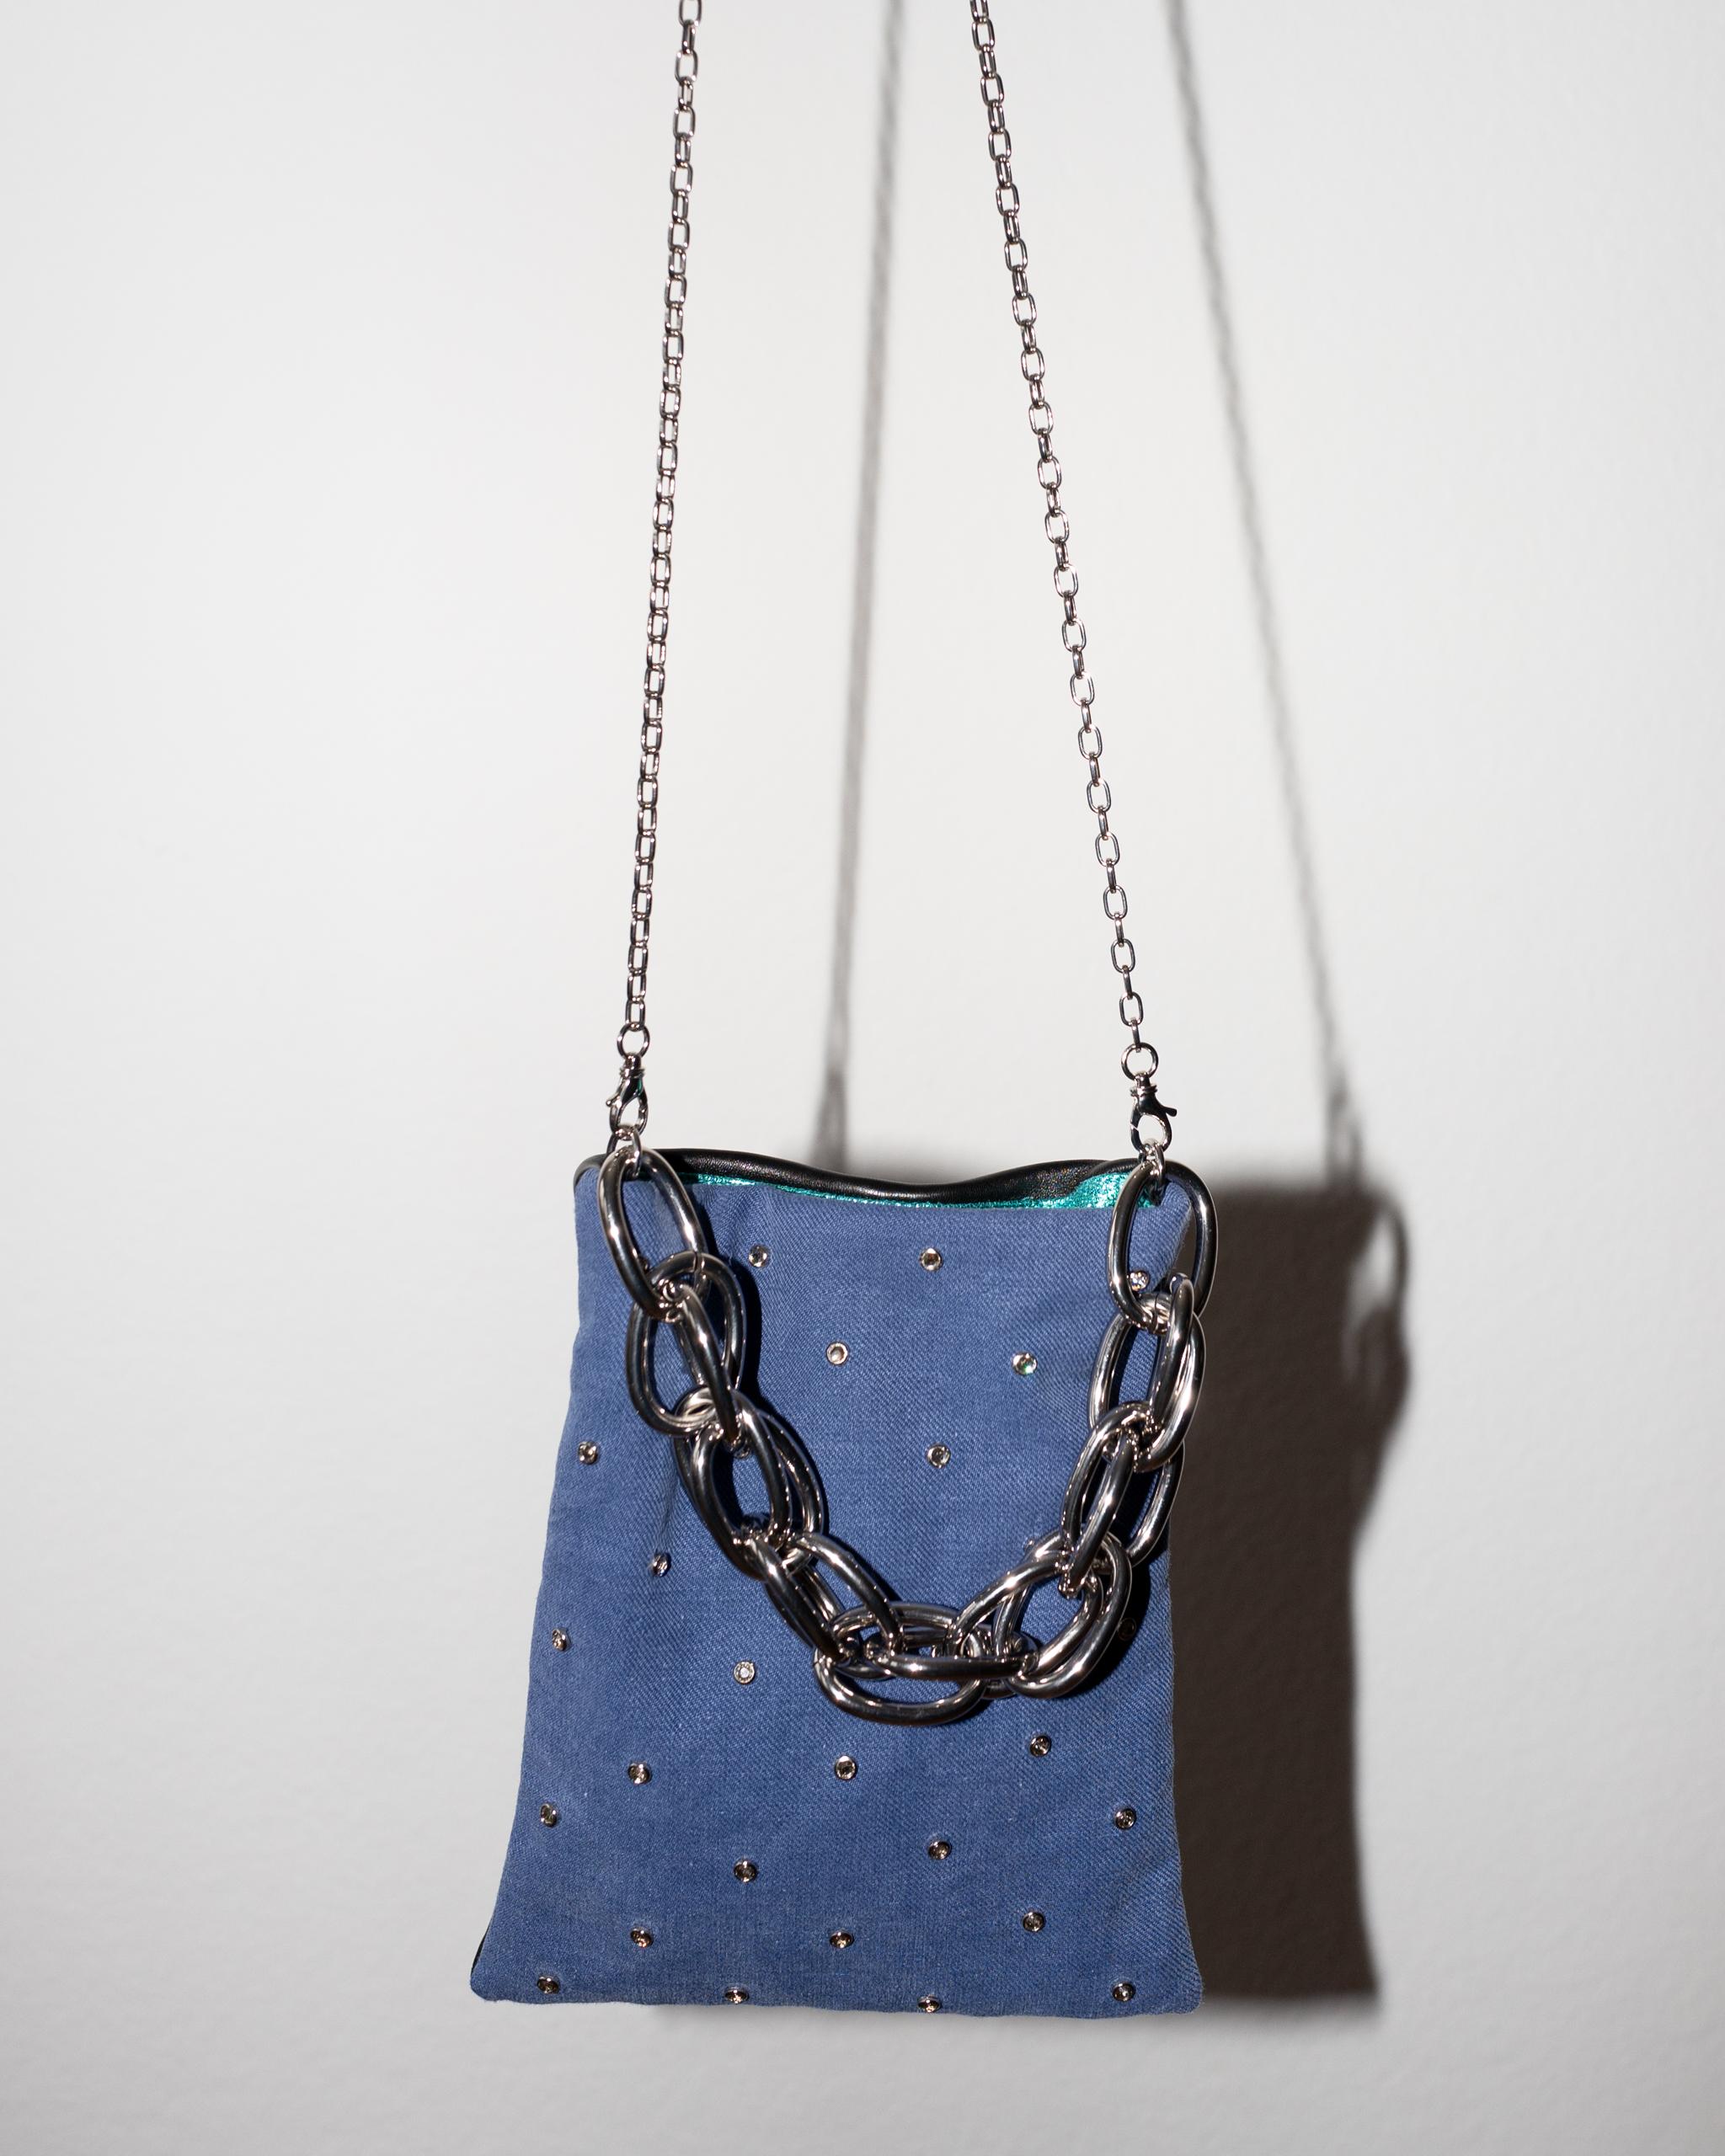 Crystal Embellished Blue Evening Shoulder Bag Black Leather Chunky Chain For Sale 1